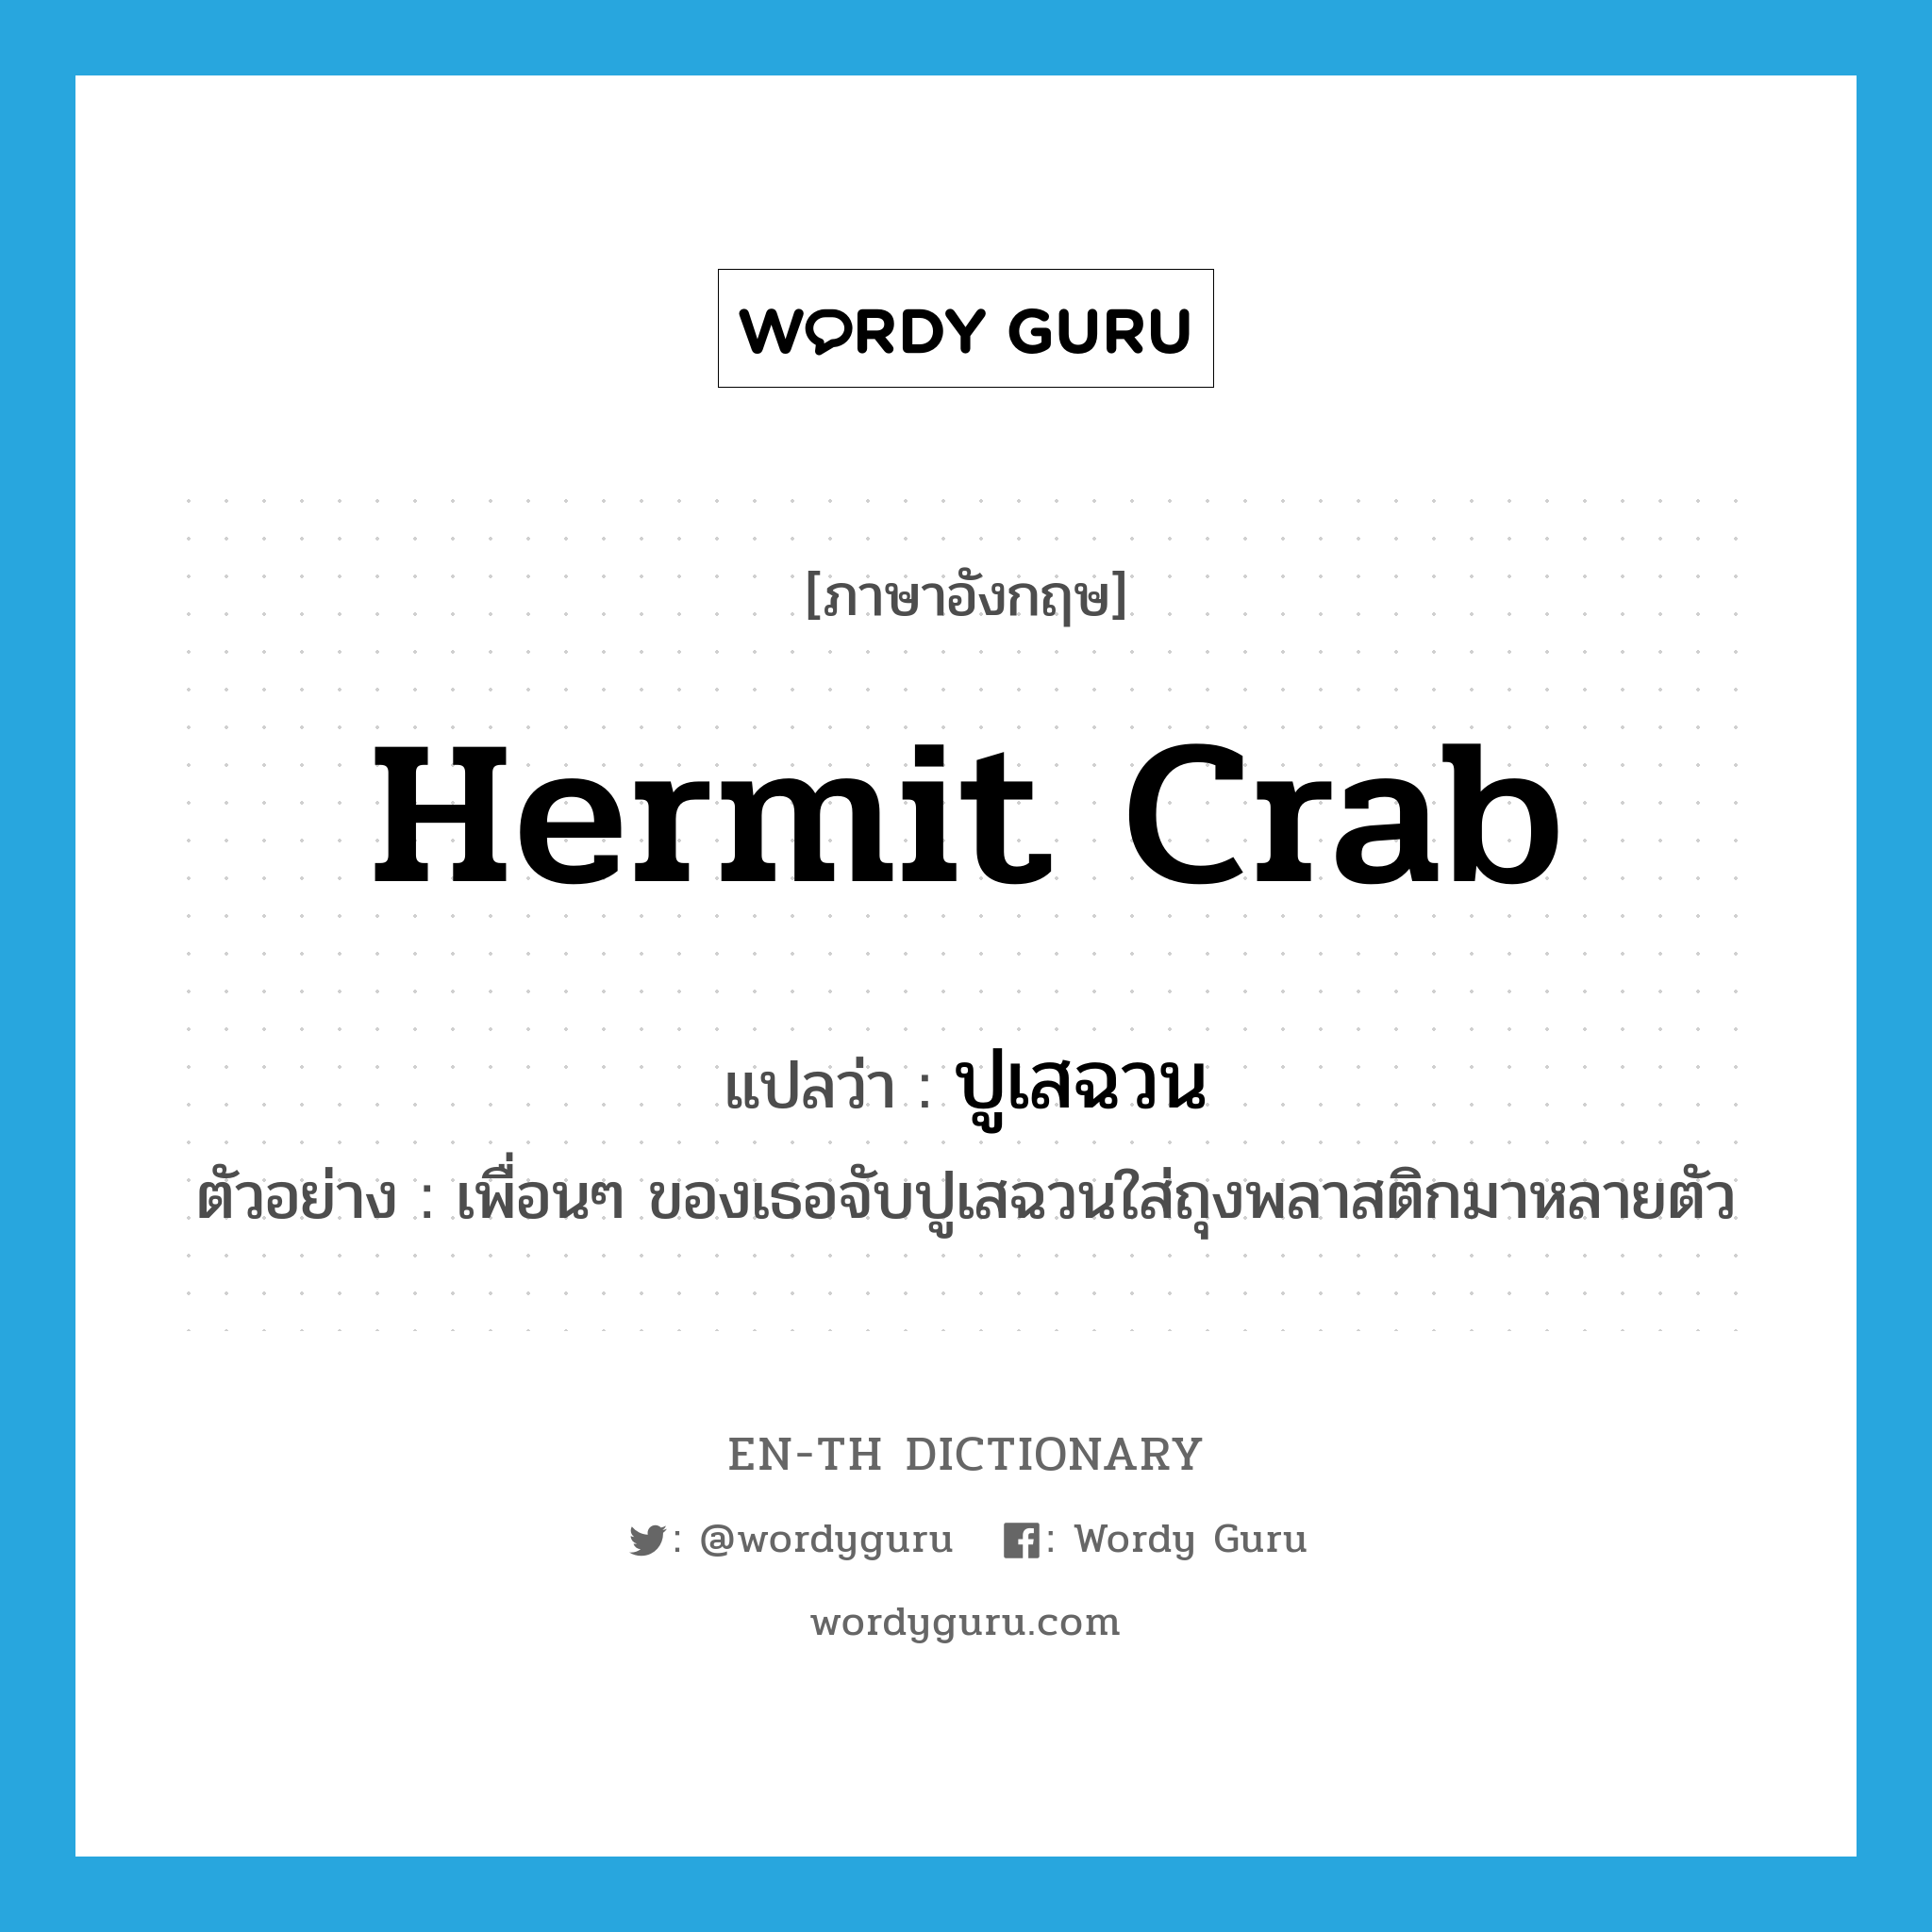 ปูเสฉวน ภาษาอังกฤษ?, คำศัพท์ภาษาอังกฤษ ปูเสฉวน แปลว่า hermit crab ประเภท N ตัวอย่าง เพื่อนๆ ของเธอจับปูเสฉวนใส่ถุงพลาสติกมาหลายตัว หมวด N